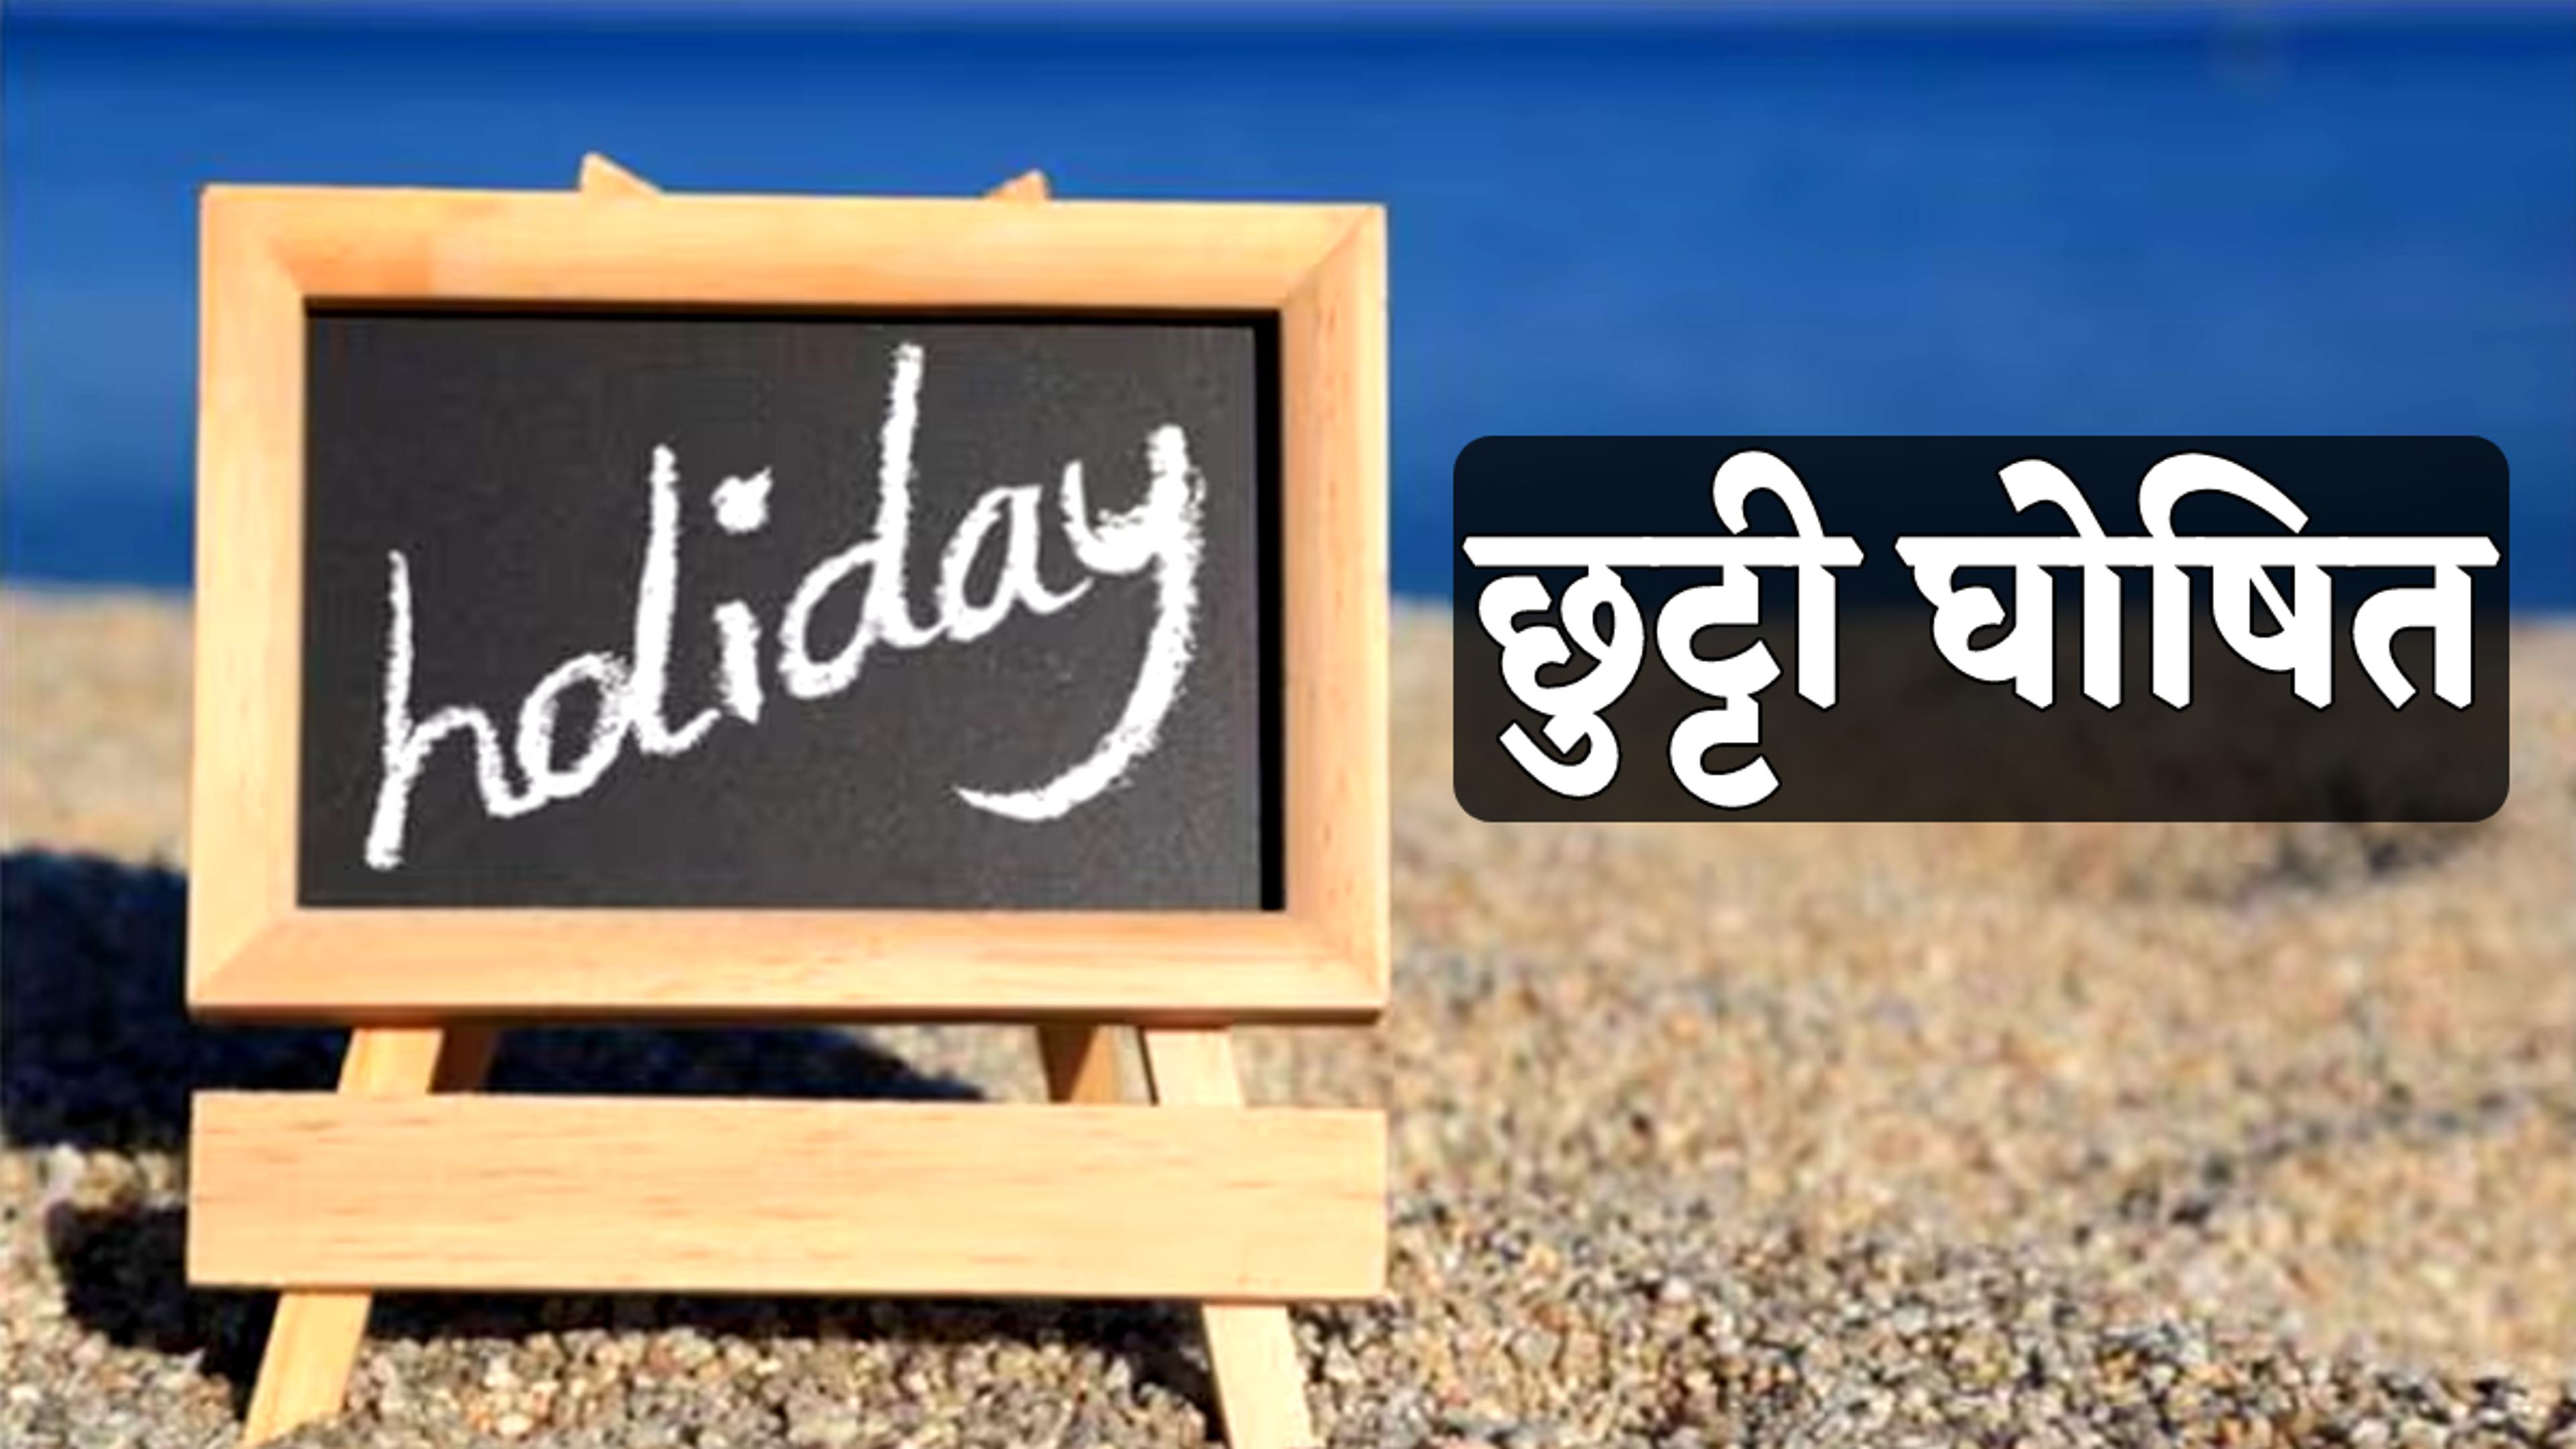 Holiday : मध्य प्रदेश में 7 मई को अवकाश घोषित, इन जिलों के लिए आदेश जारी